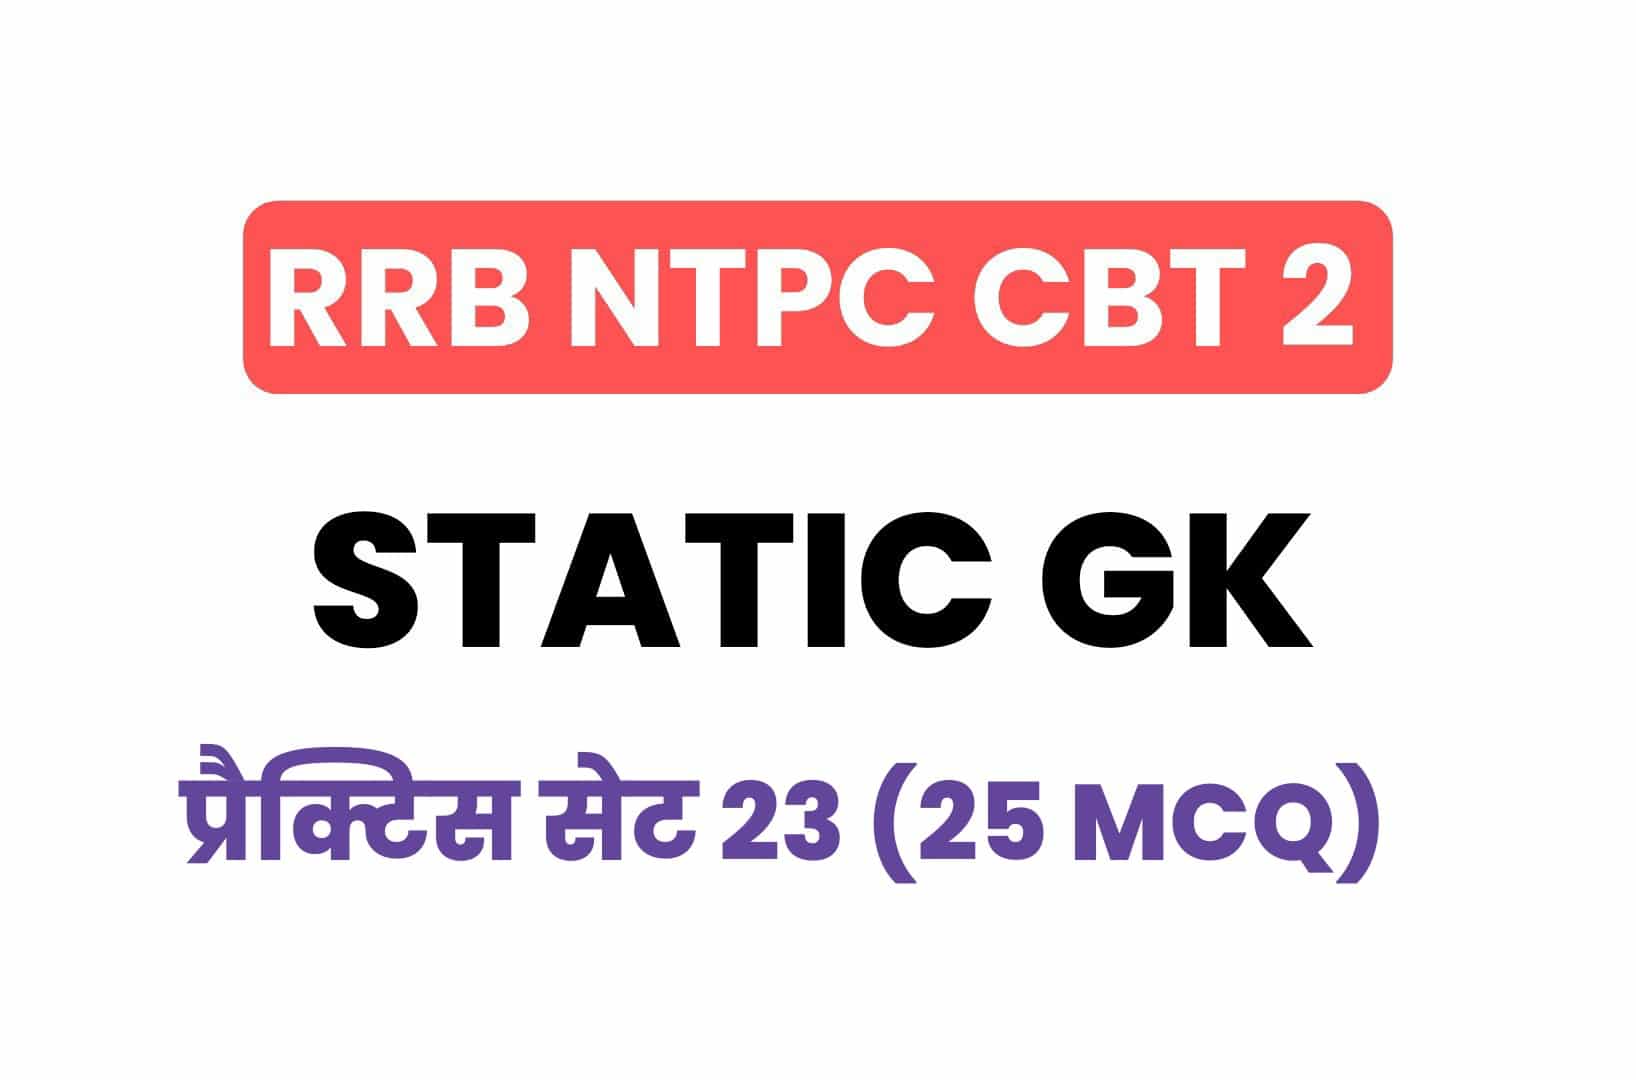 RRB NTPC CBT 2 Static GK प्रैक्टिस सेट 23: परीक्षा में पूछें गये महत्वपूर्ण प्रश्नों का संग्रह, जरूर पढ़ें